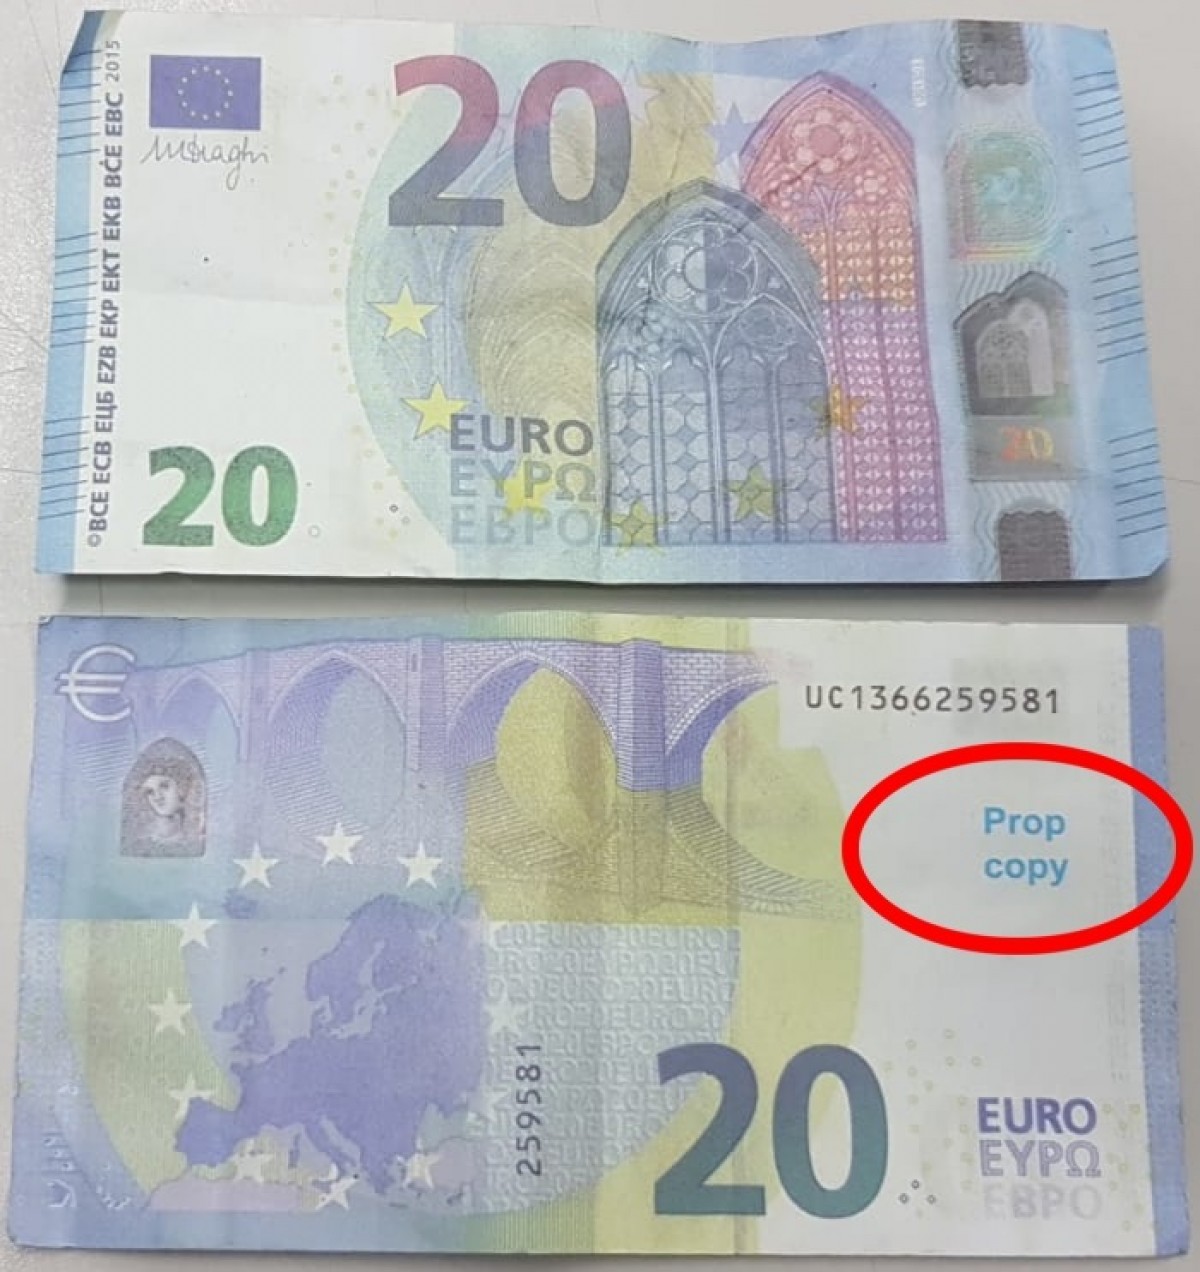 Una mostra dels bitllets falsos de 20 euros detectats a Sant Celoni